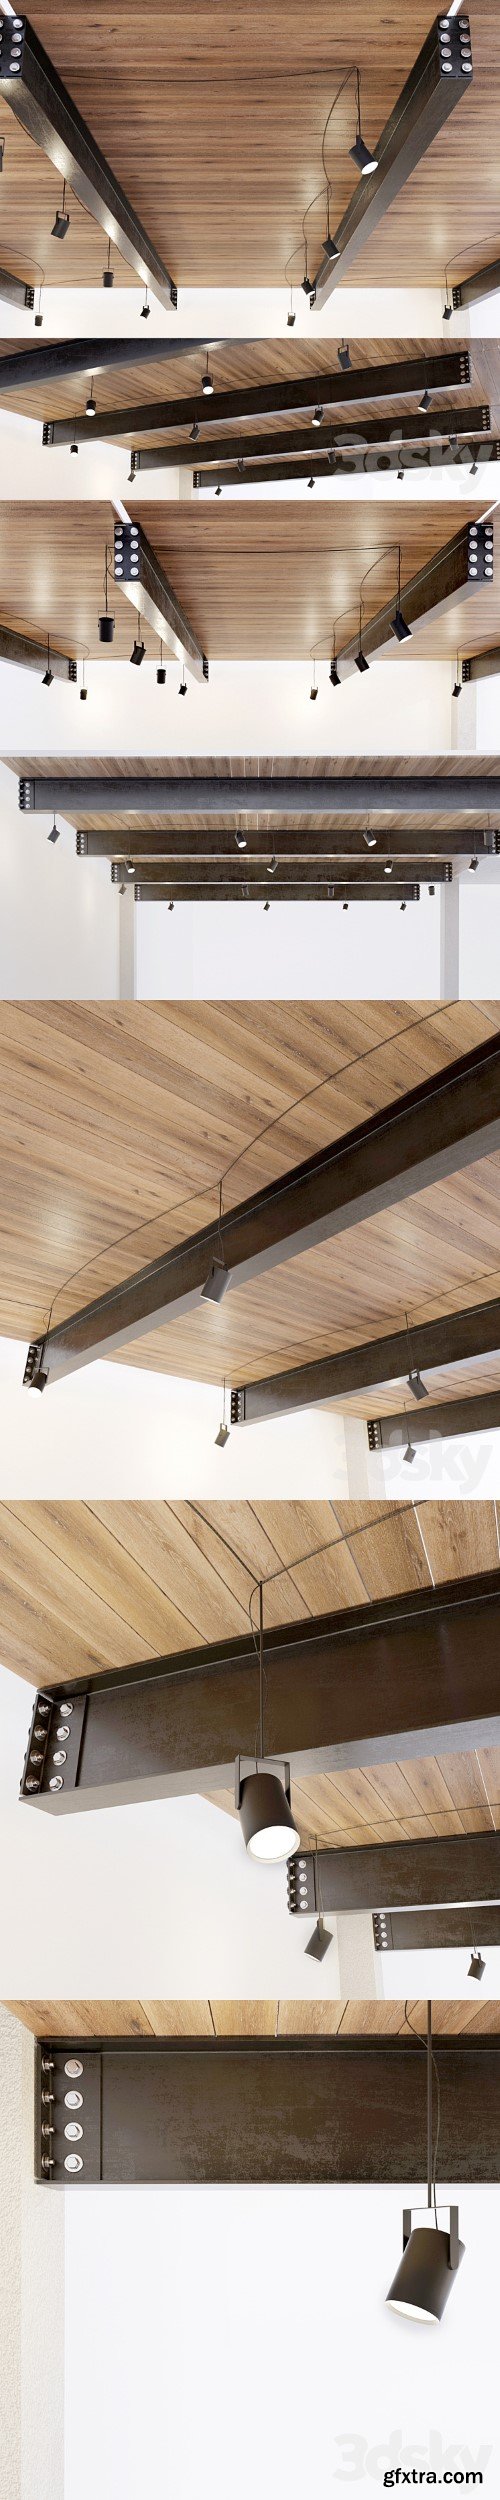 Wooden ceiling on metal beams. 22